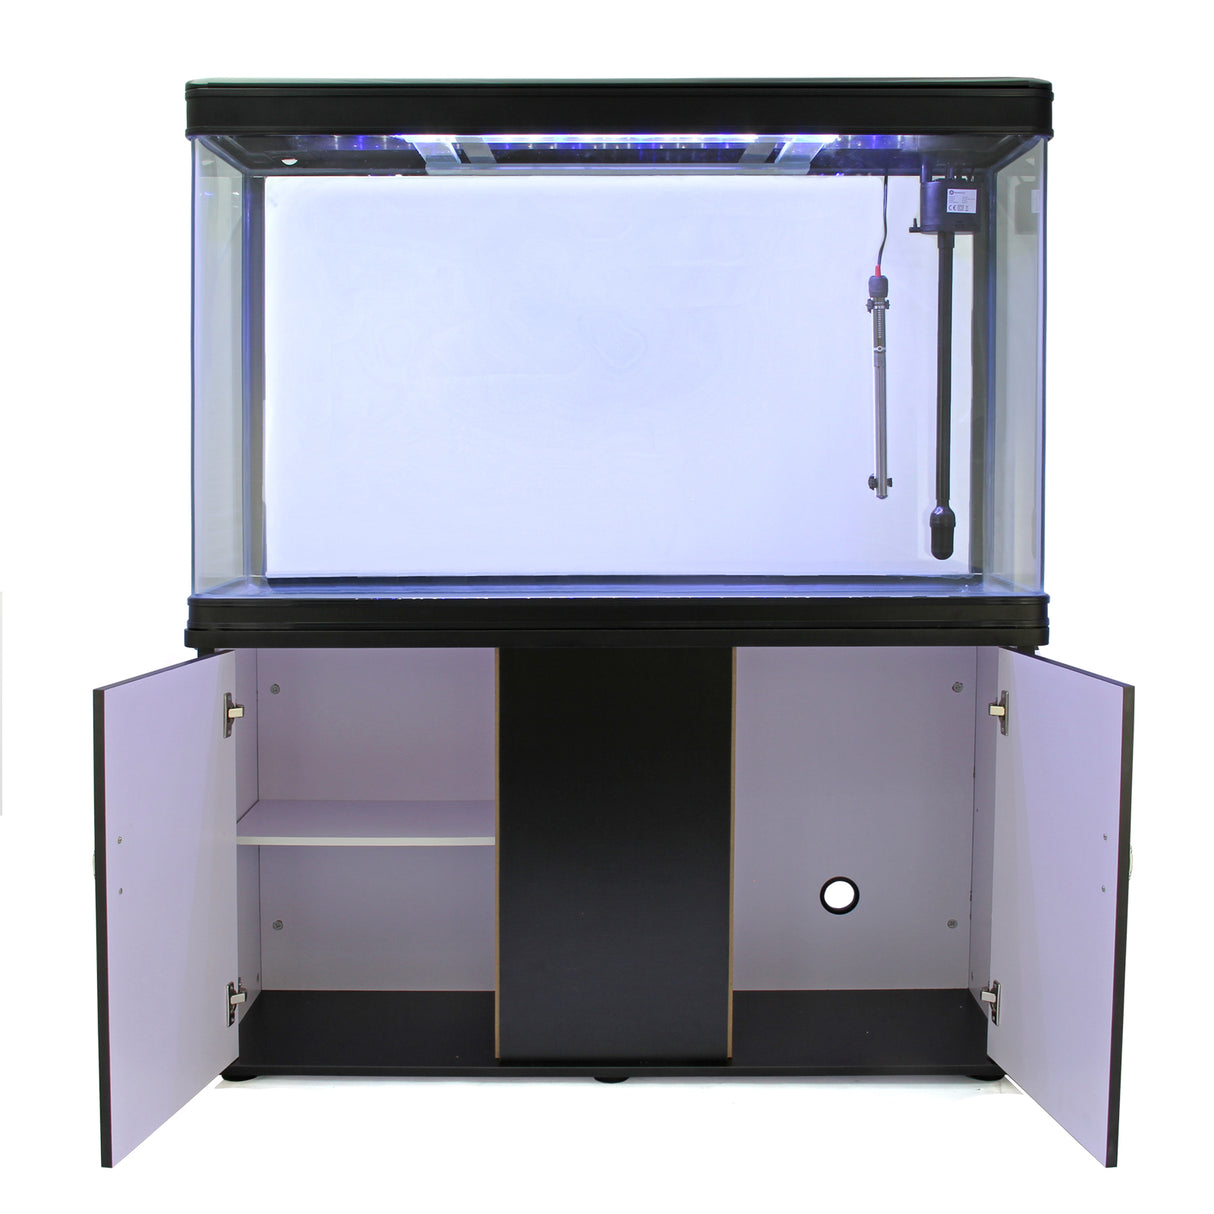 Aquarium Fish Tank & Cabinet - Black